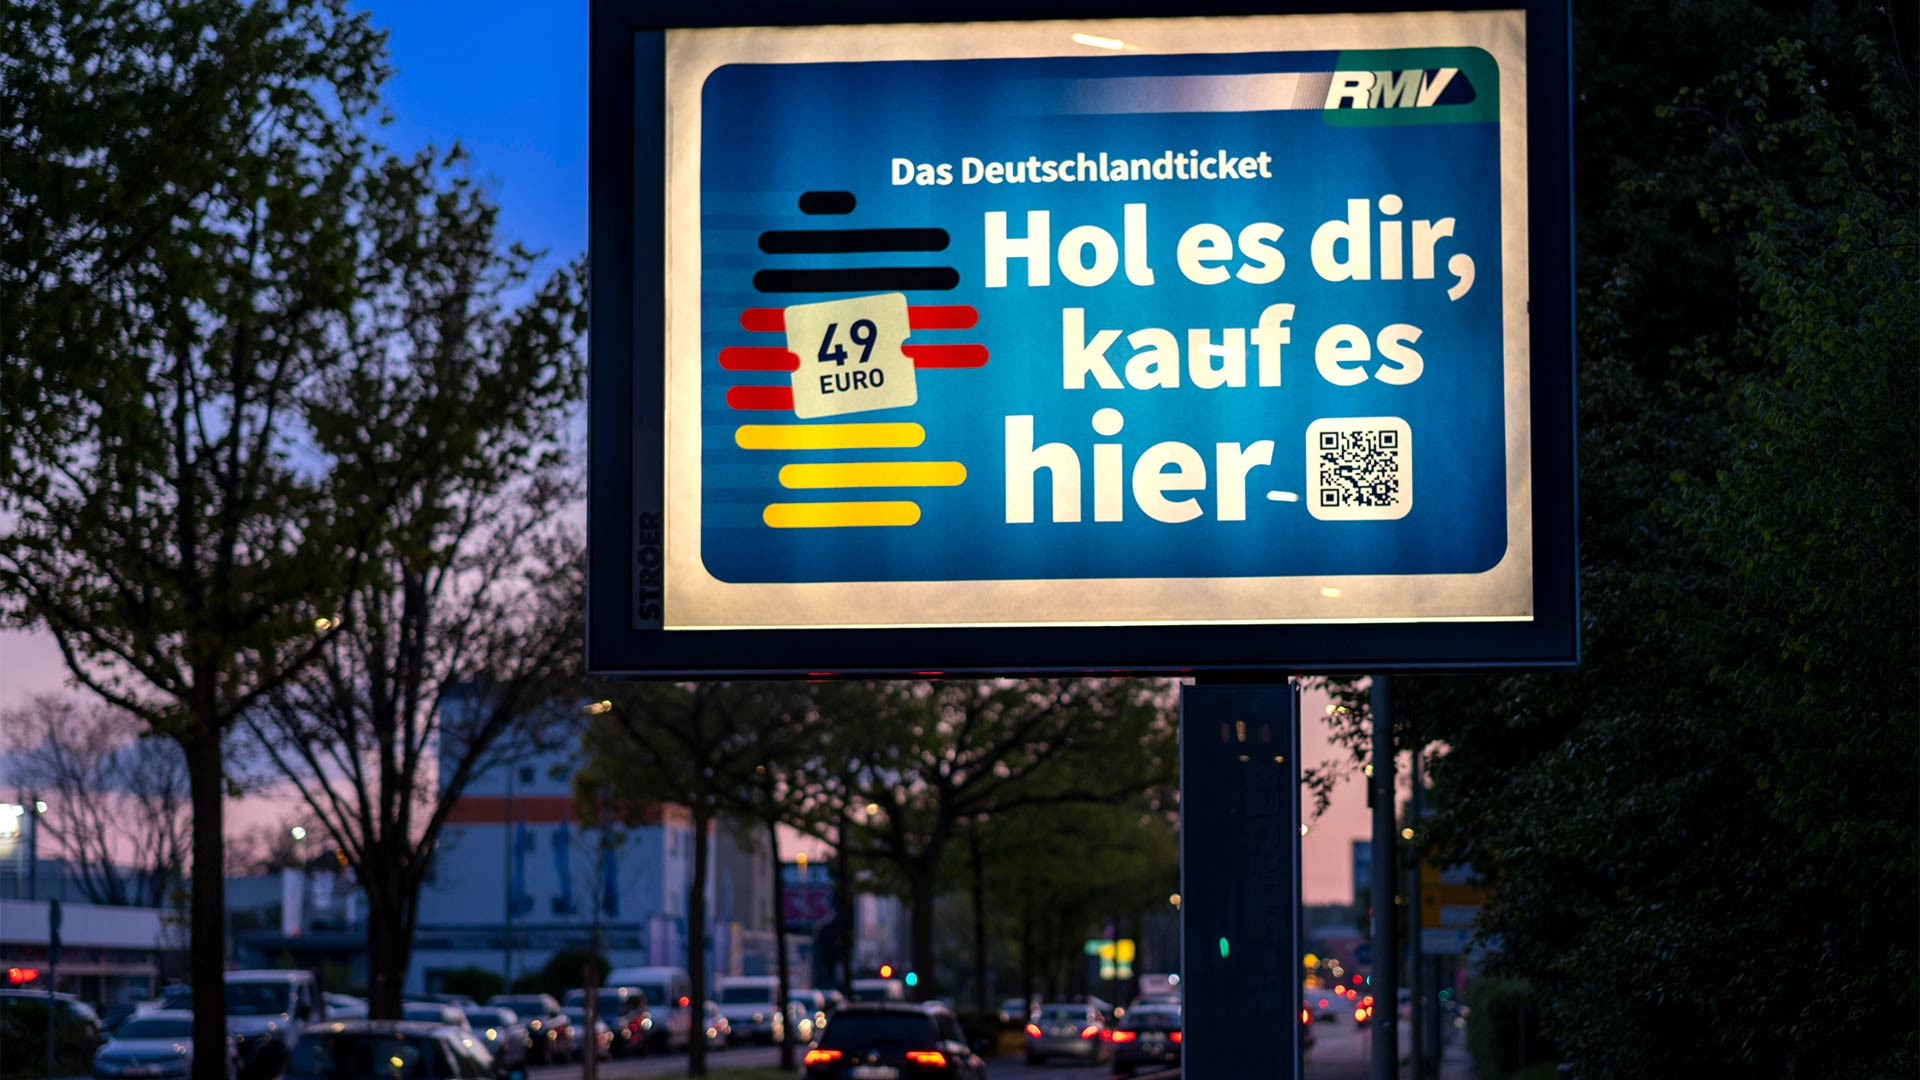 Werbetafel für das Deutschlandticket an einer befahrenen Straße in Frankfurt.